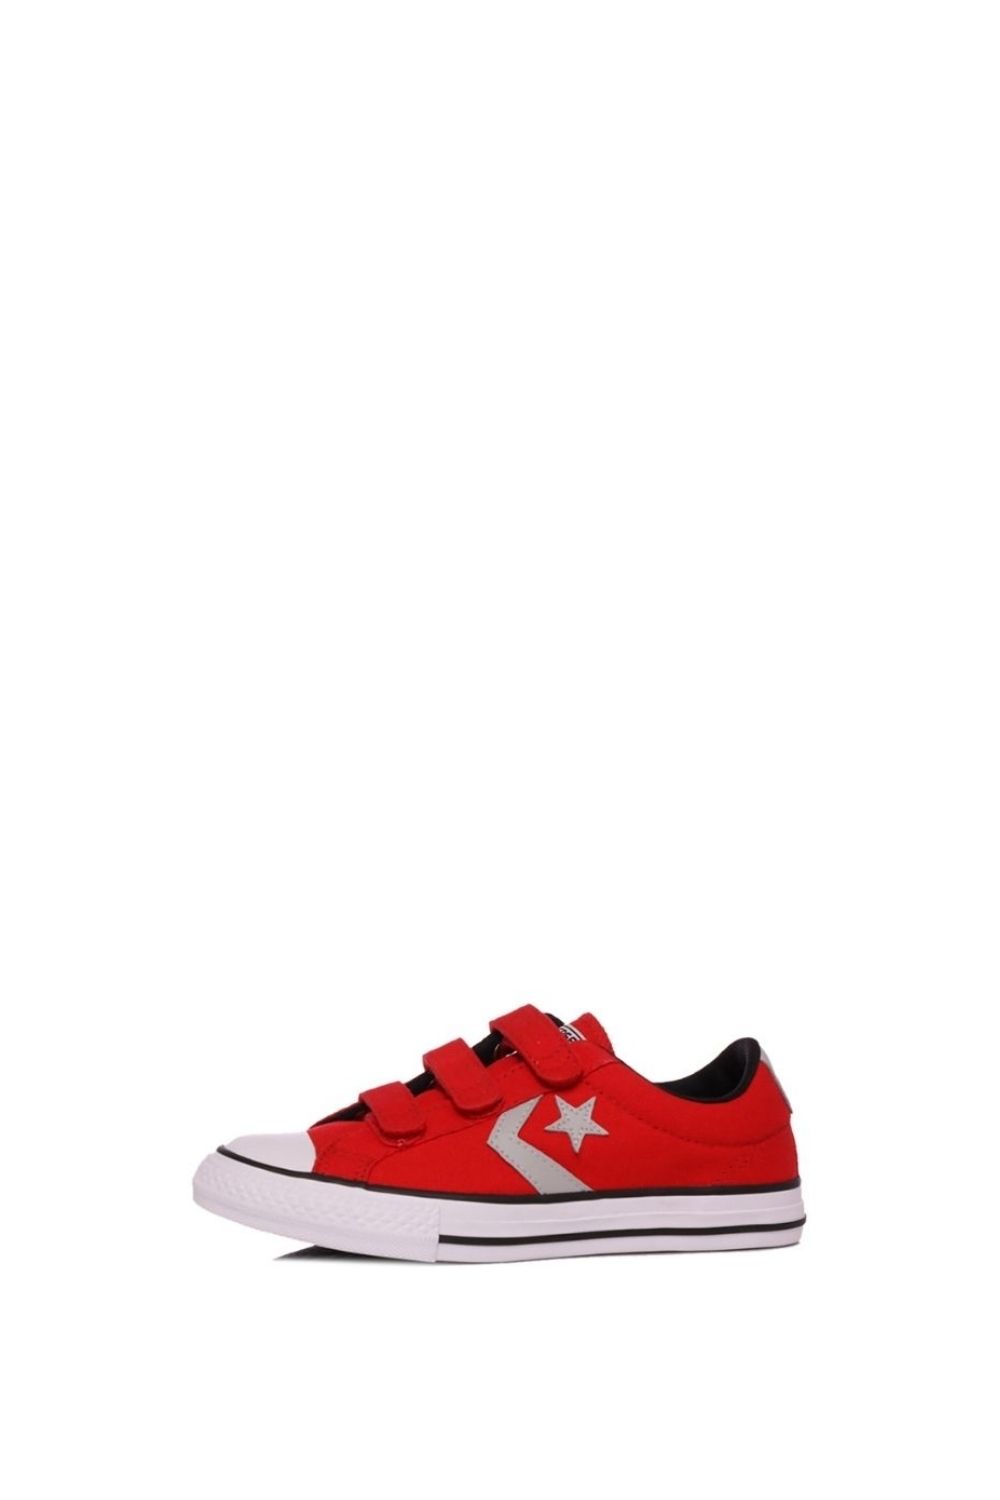 Παιδικά/Boys/Παπούτσια/Sneakers CONVERSE - Παιδικά sneakers CONVERSE Star Player EV 3V Ox κόκκινα γκρι